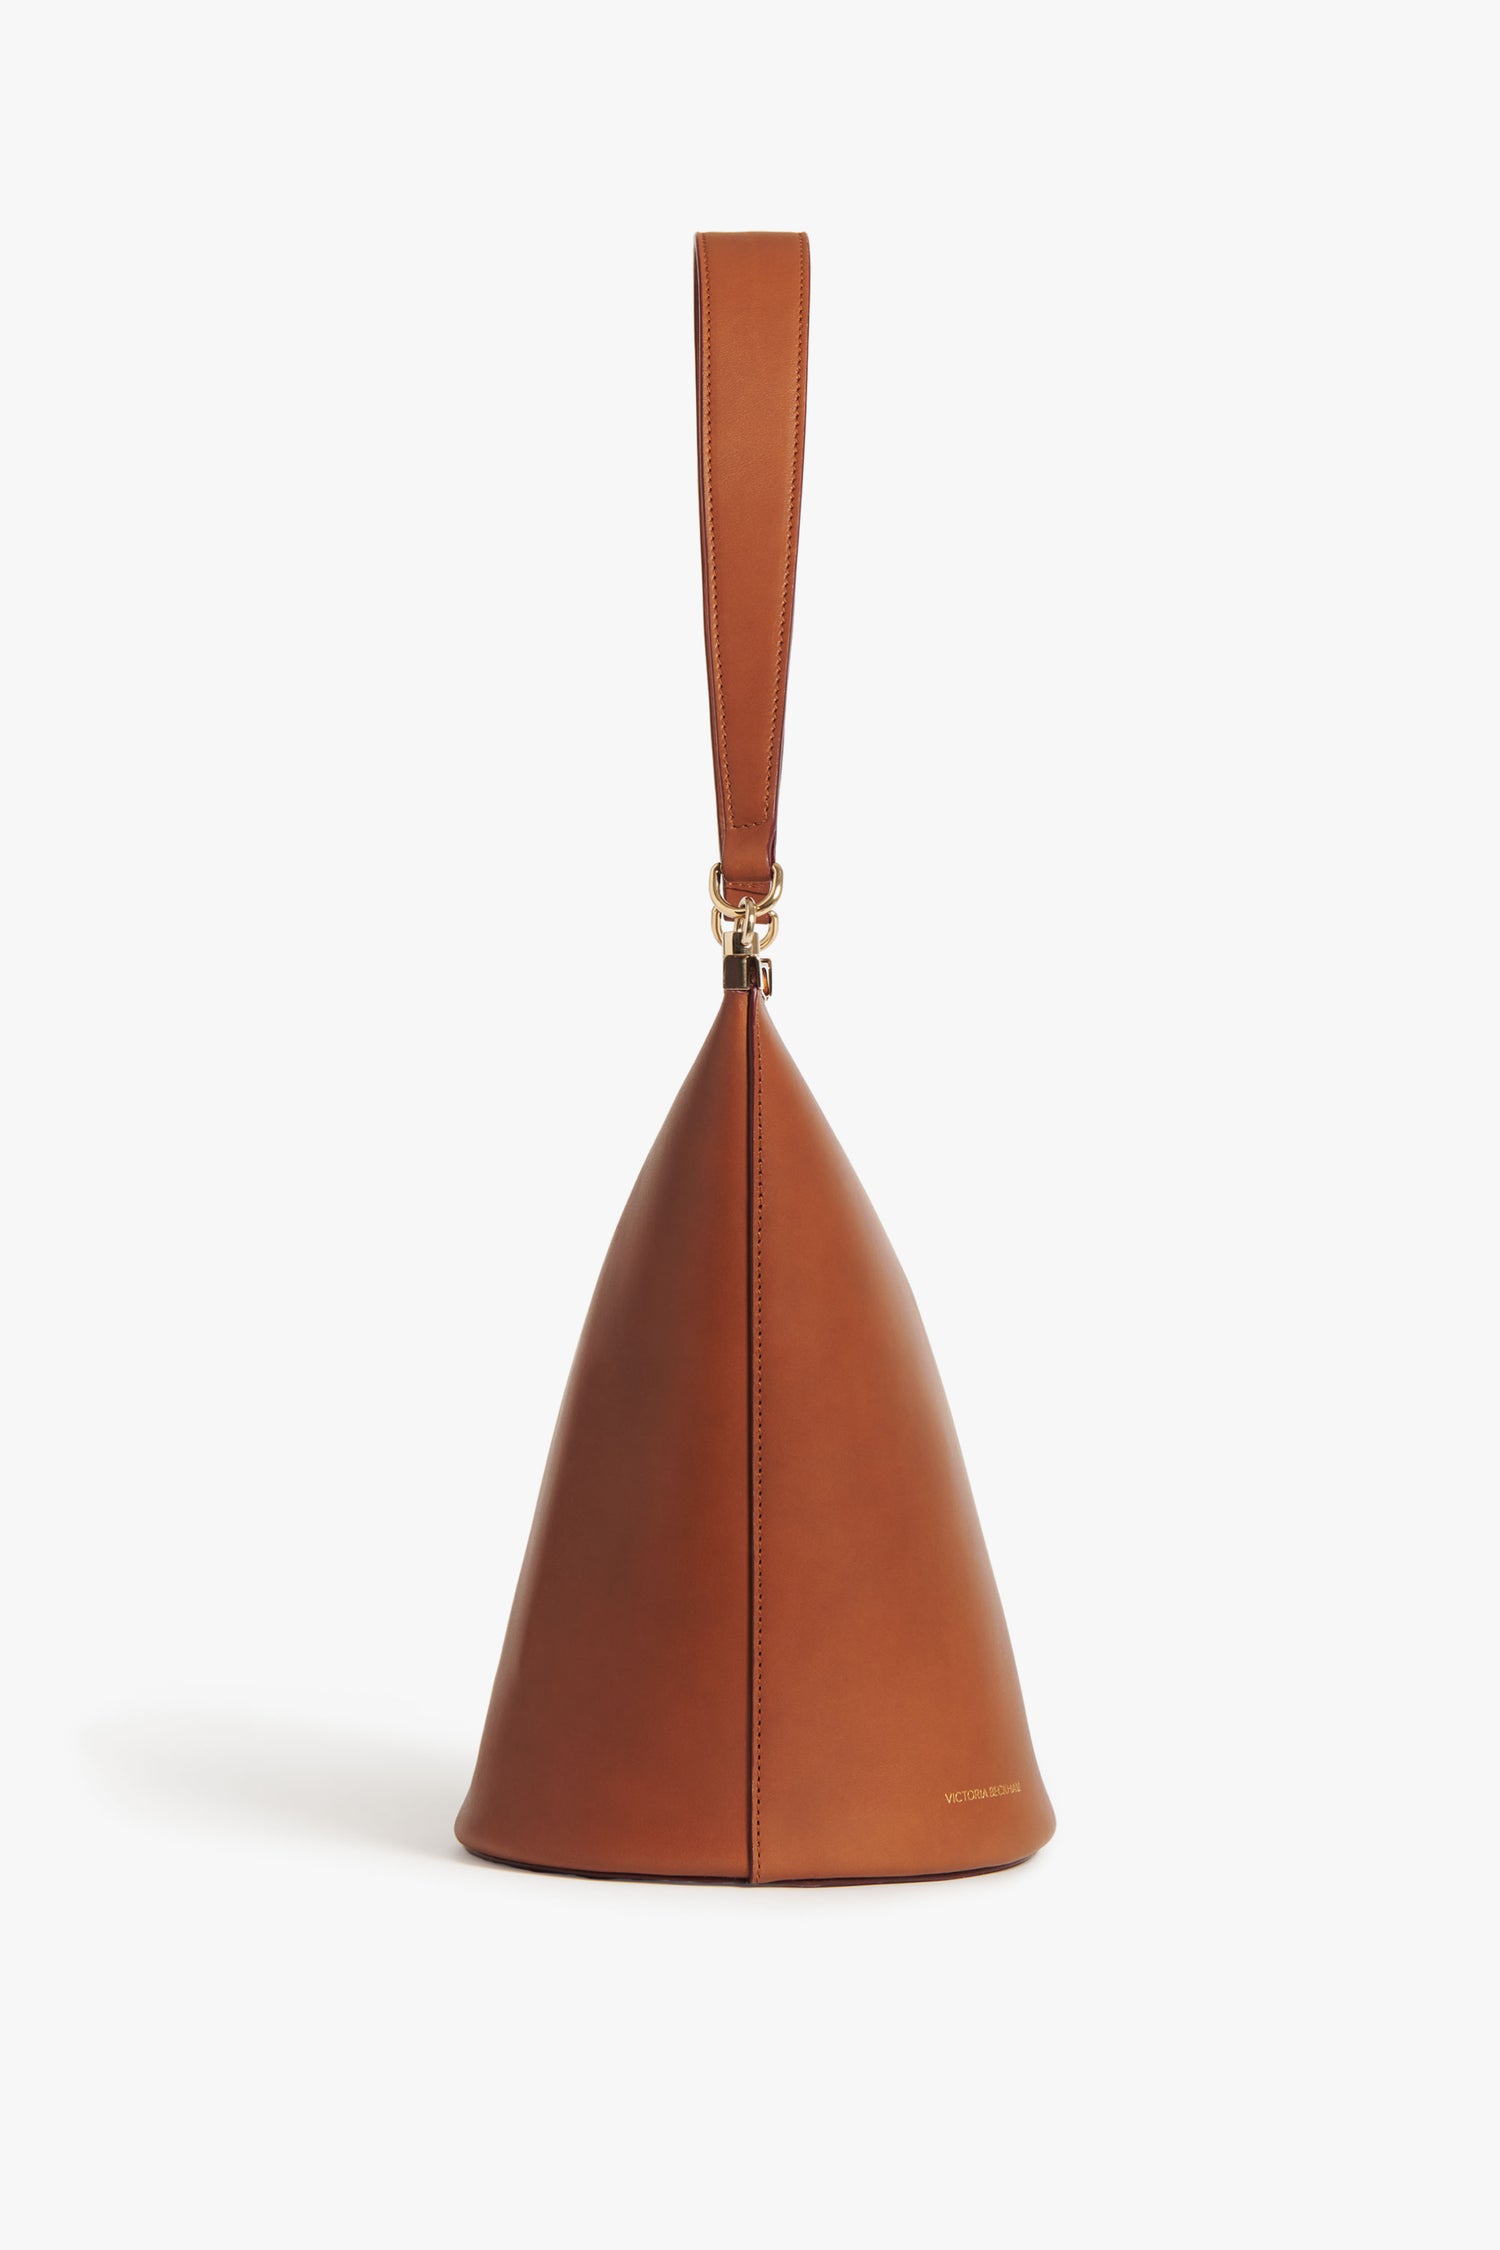 Victoria Beckham Bag - Frame Bucket Bag in Cognac Leather